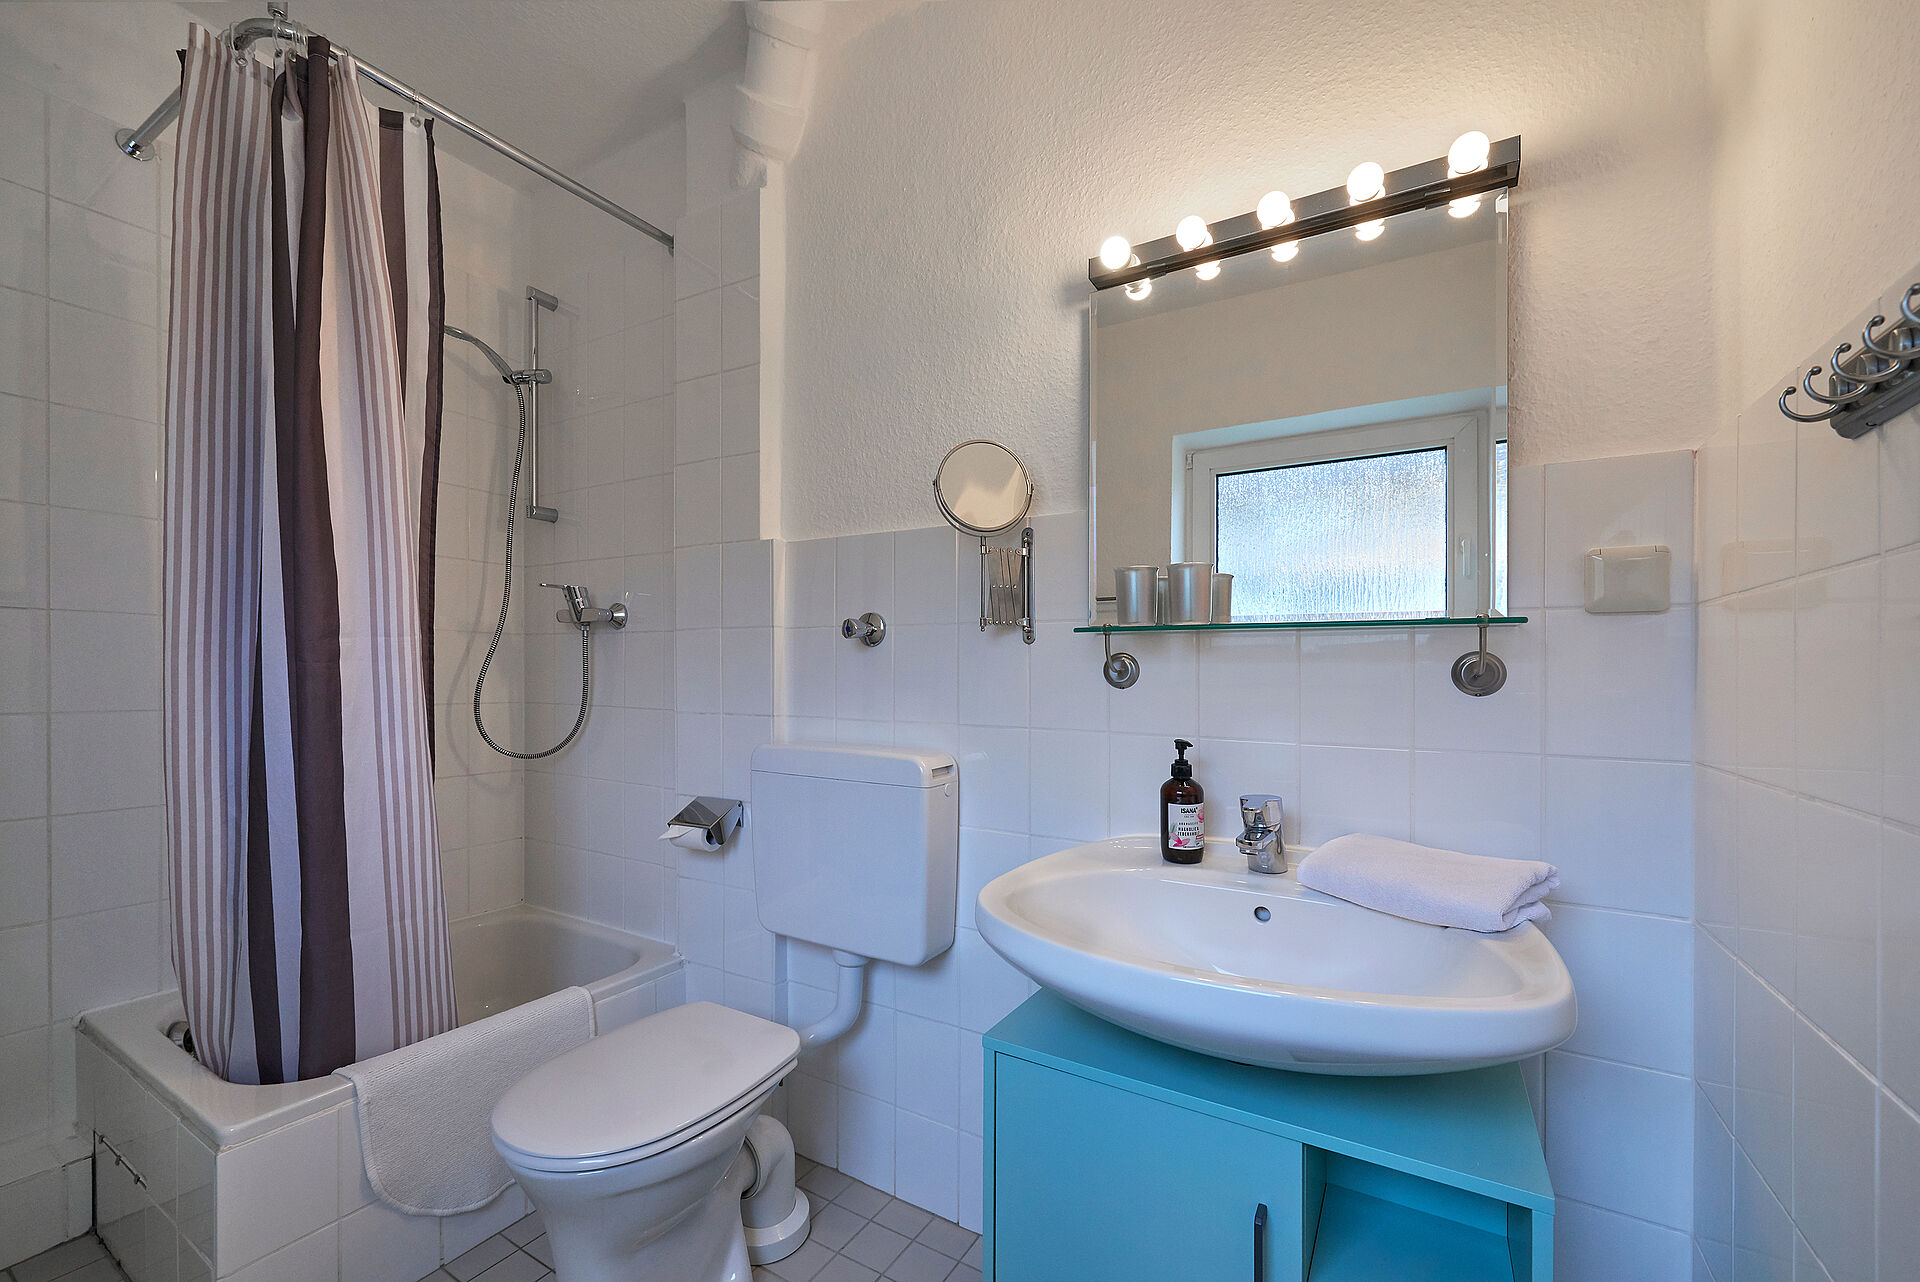 Helles weißes Badezimmer mit Dusche und Duschvorhang, der Waschbeckenunterschrank ist hellblau